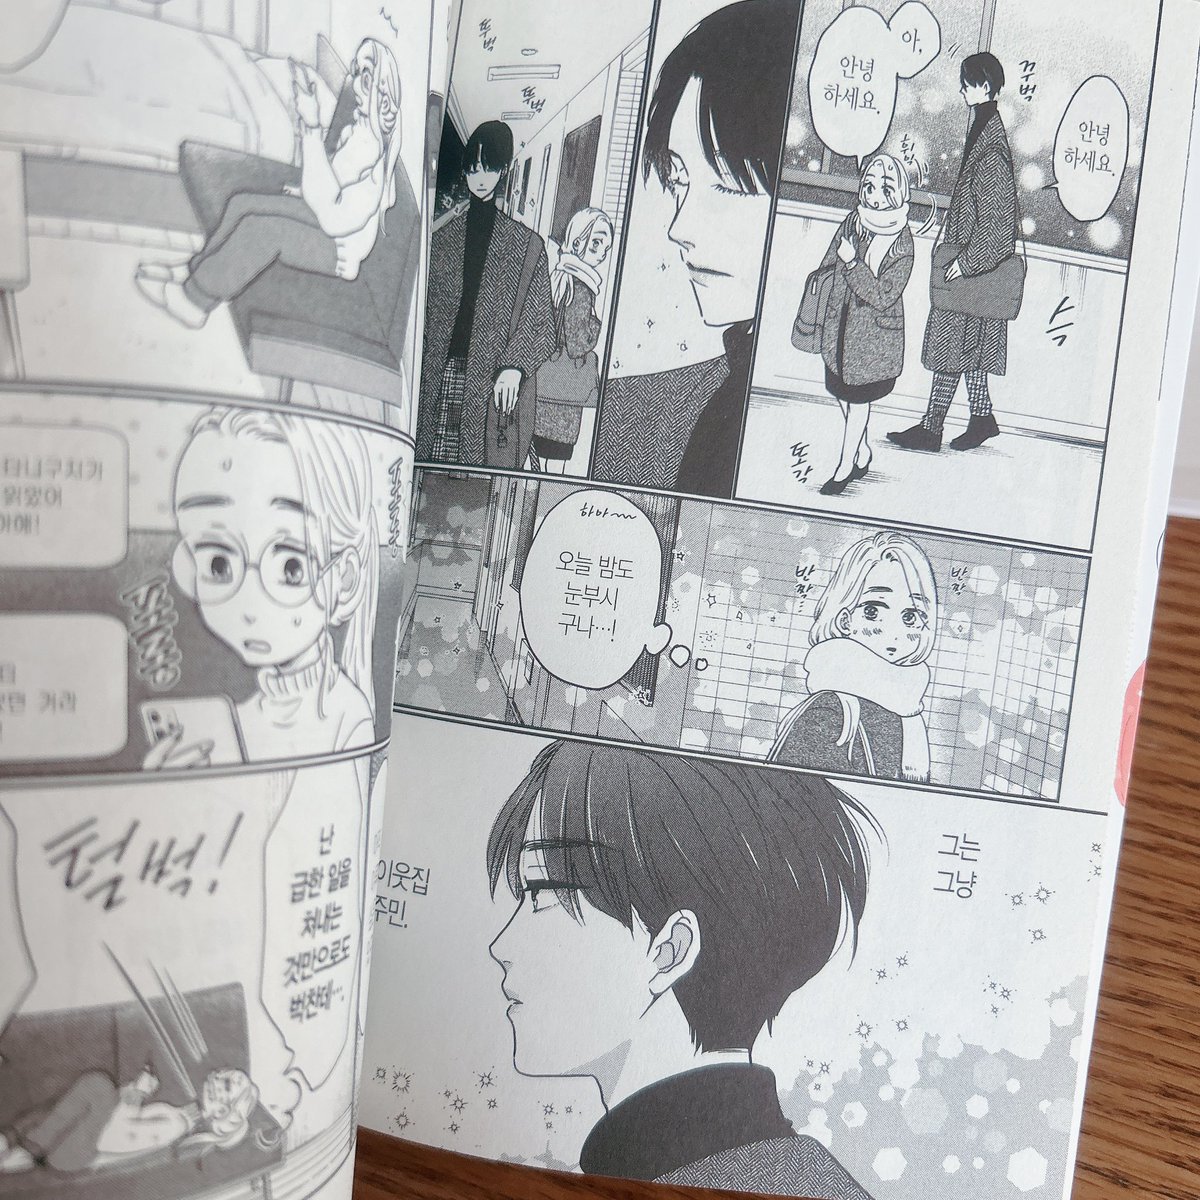 担当さんより韓国語翻訳版『いつかのいつか』送っていただいてさっき開封して中身見てました。嬉しいなあ。じーんときてしまった。この漫画を好きになってくれる人に届くといいな🥲